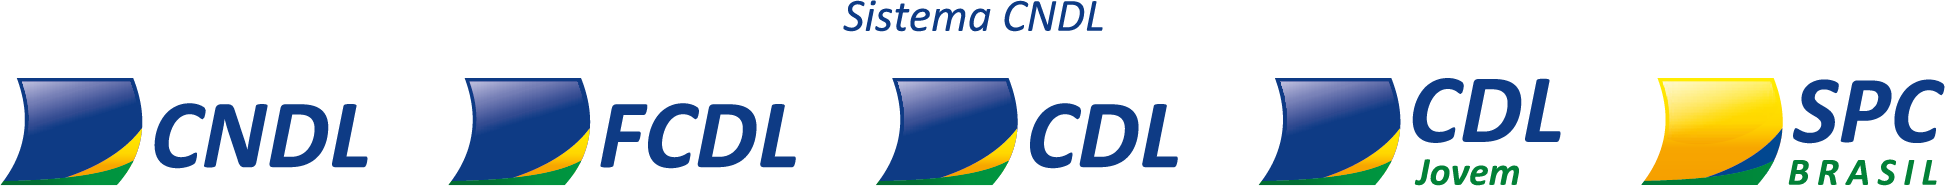 Logos CDL